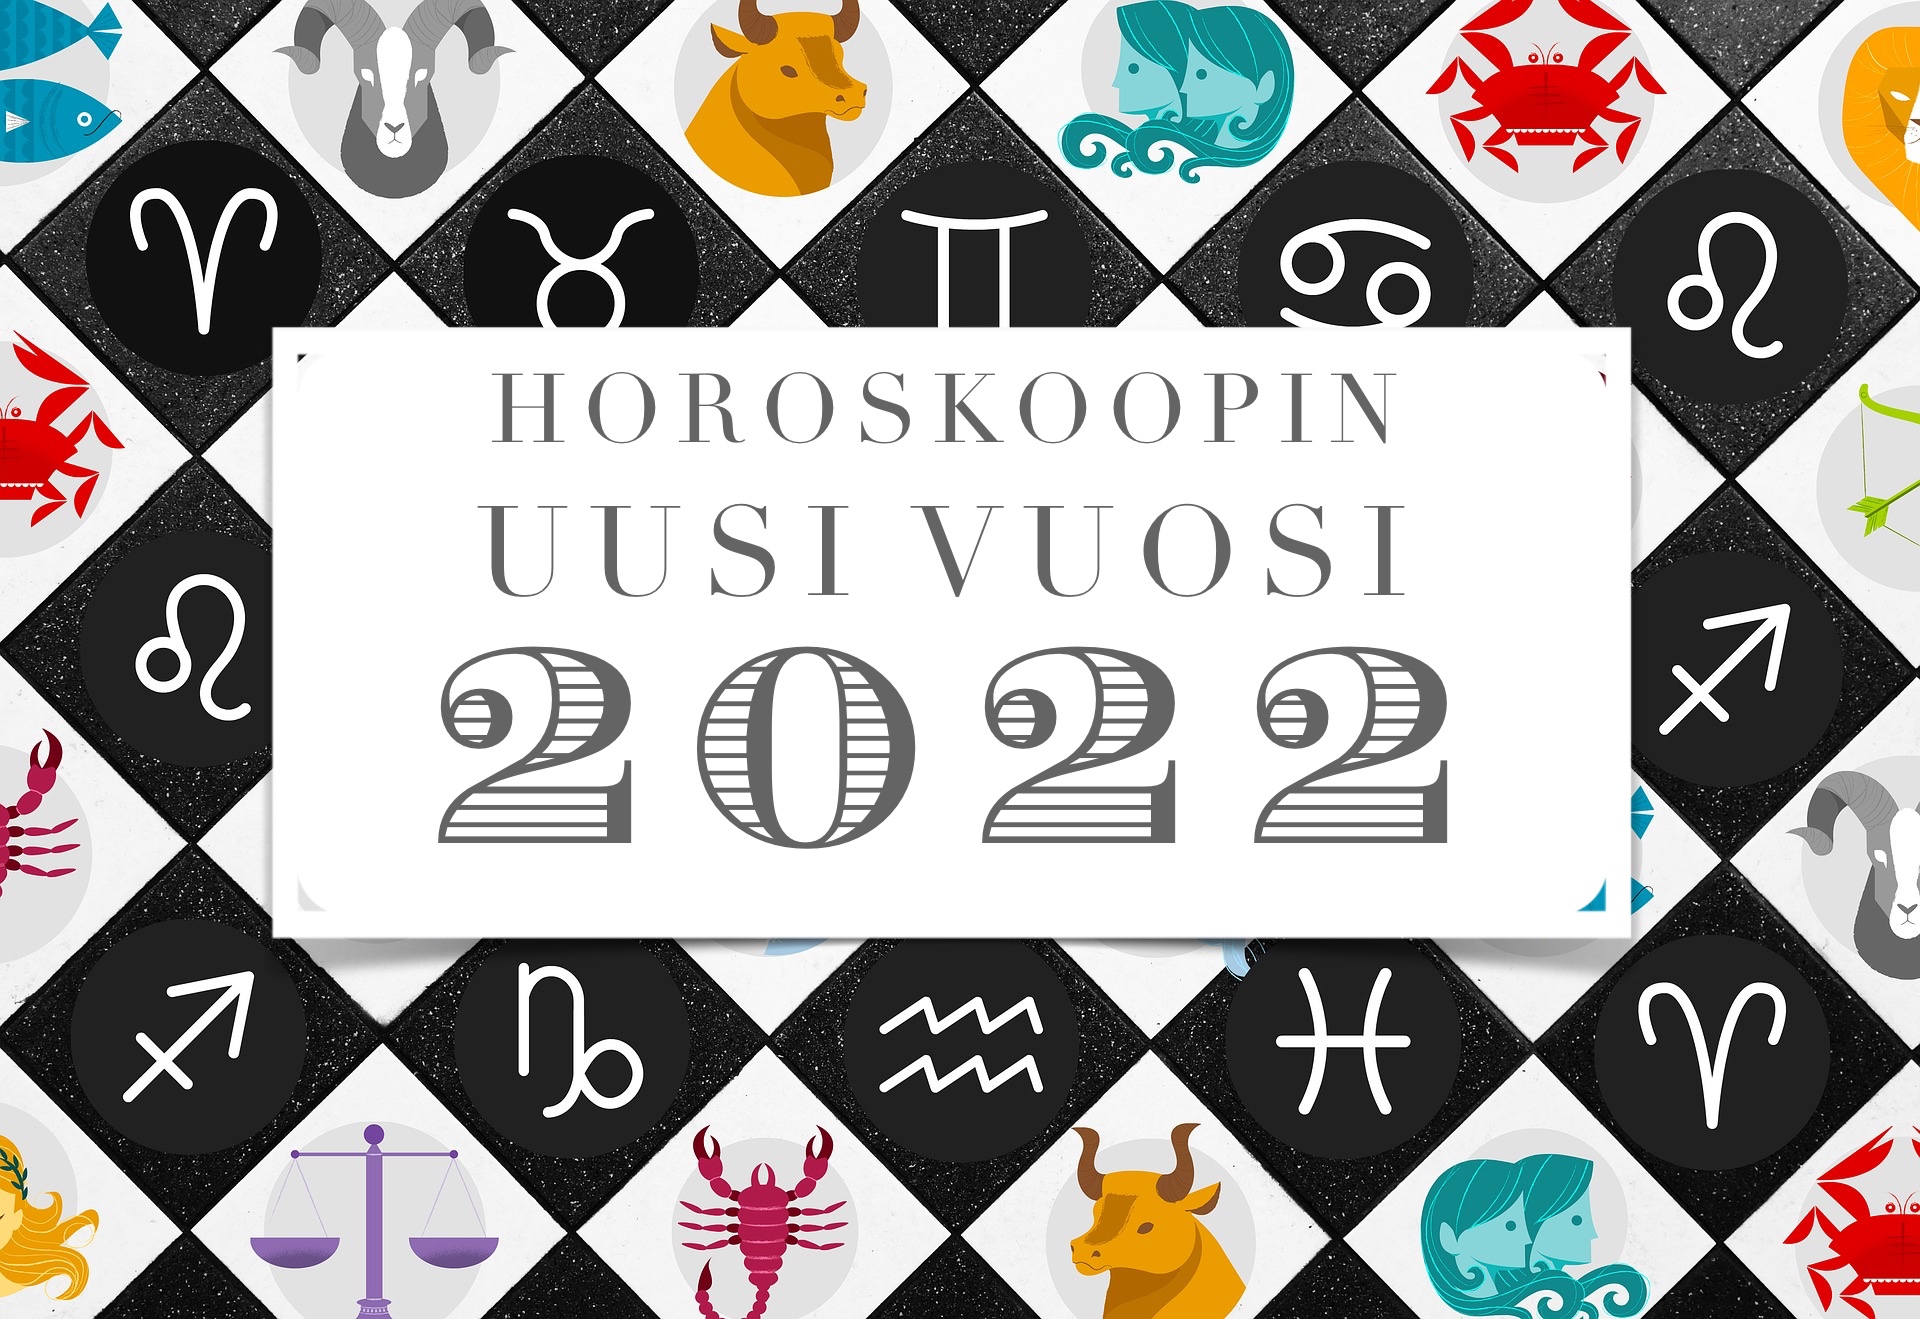 horoskoopinuusivuosi2